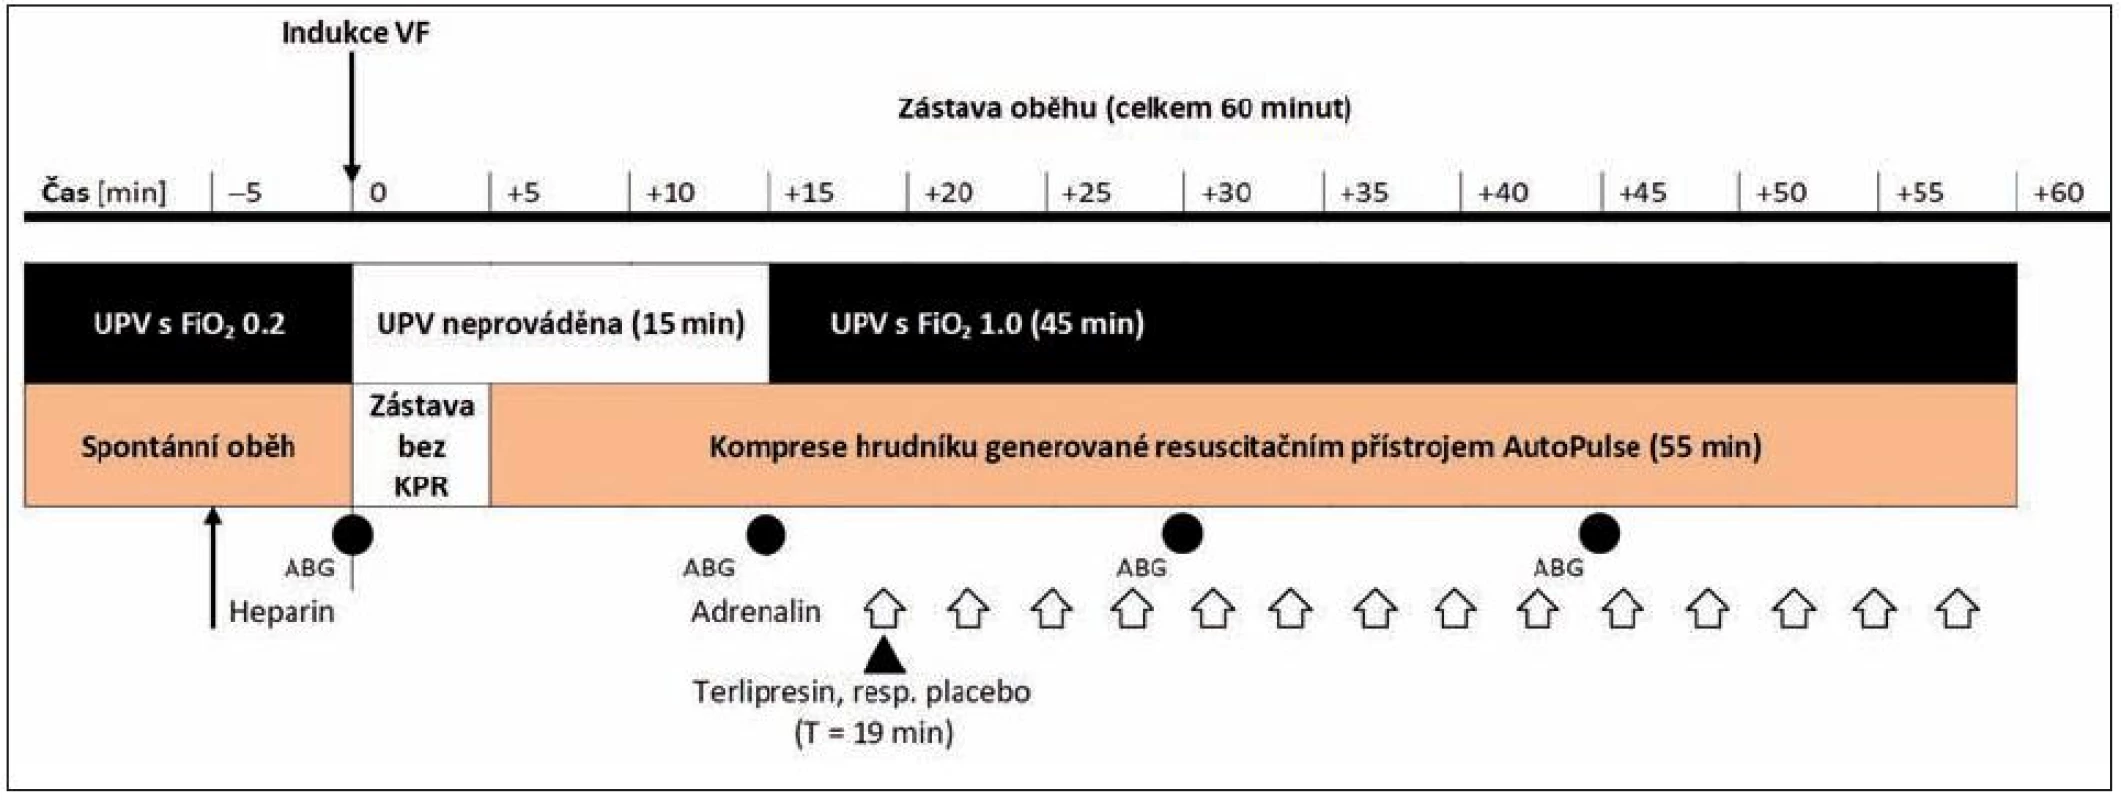 Časový průběh experimentu
Bílé šipky znázorňují aplikaci jednotlivých dávek adrenalinu, černá šipka označuje podání terlipresinu ve skupině TER, respektive placeba ve skupině ADR.
Zkratky: ABG – odběr vzorků na vyšetření krevních plynů, FiO&lt;sub&gt;2&lt;/sub&gt; – inspirační frakce kyslíku ve vdechované směsi, UPV – umělá plicní ventilace, VF – fibrilace komor